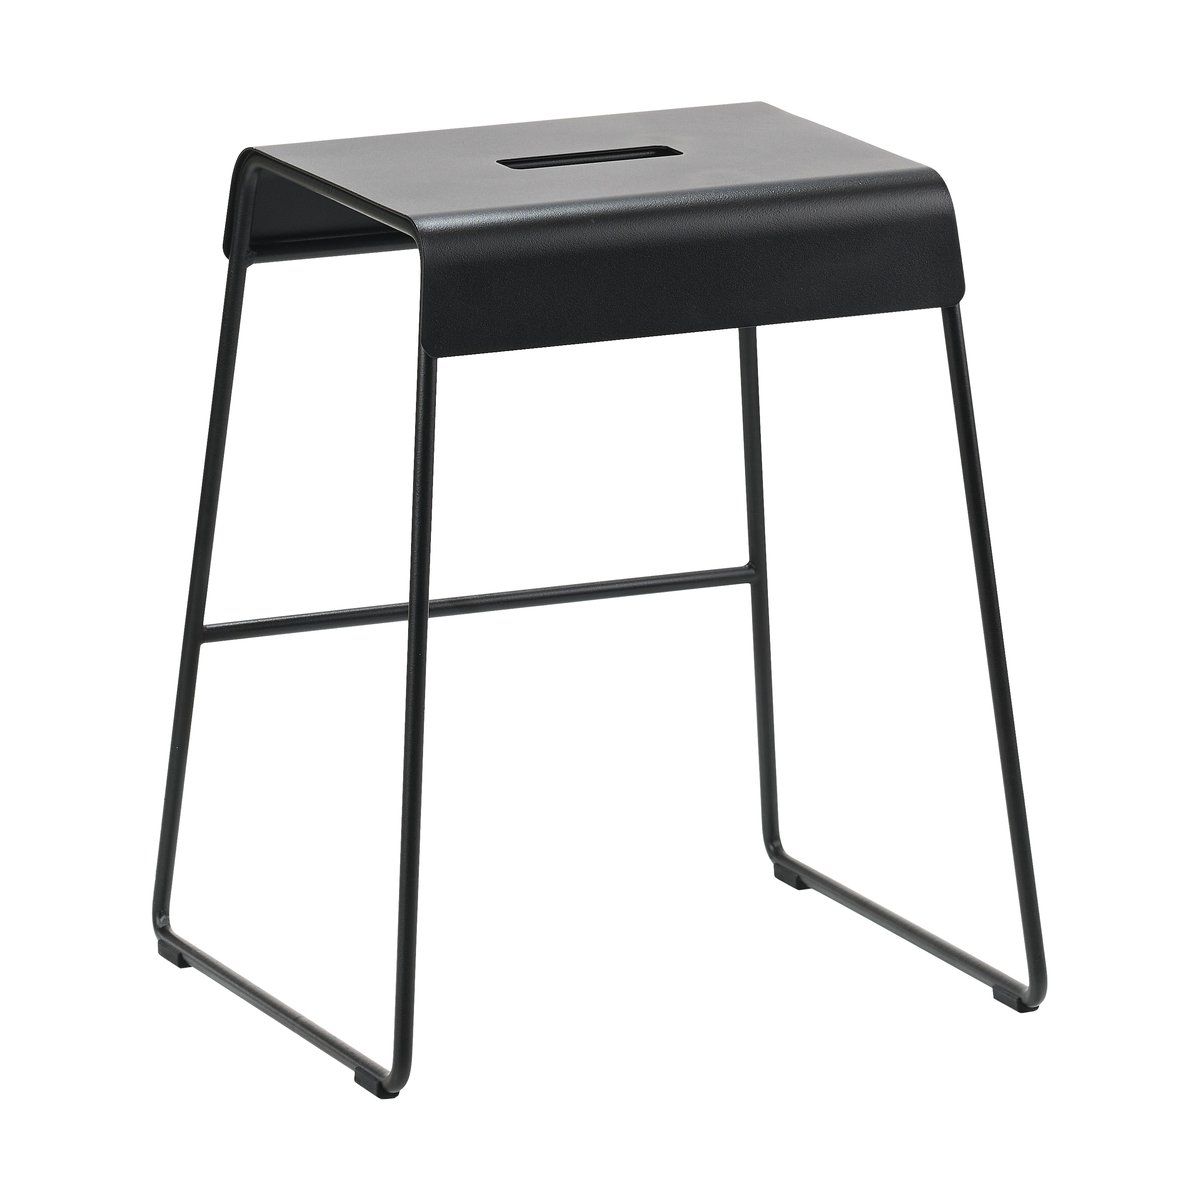 Zone Denmark A-stool outdoor kruk 45 cm Black